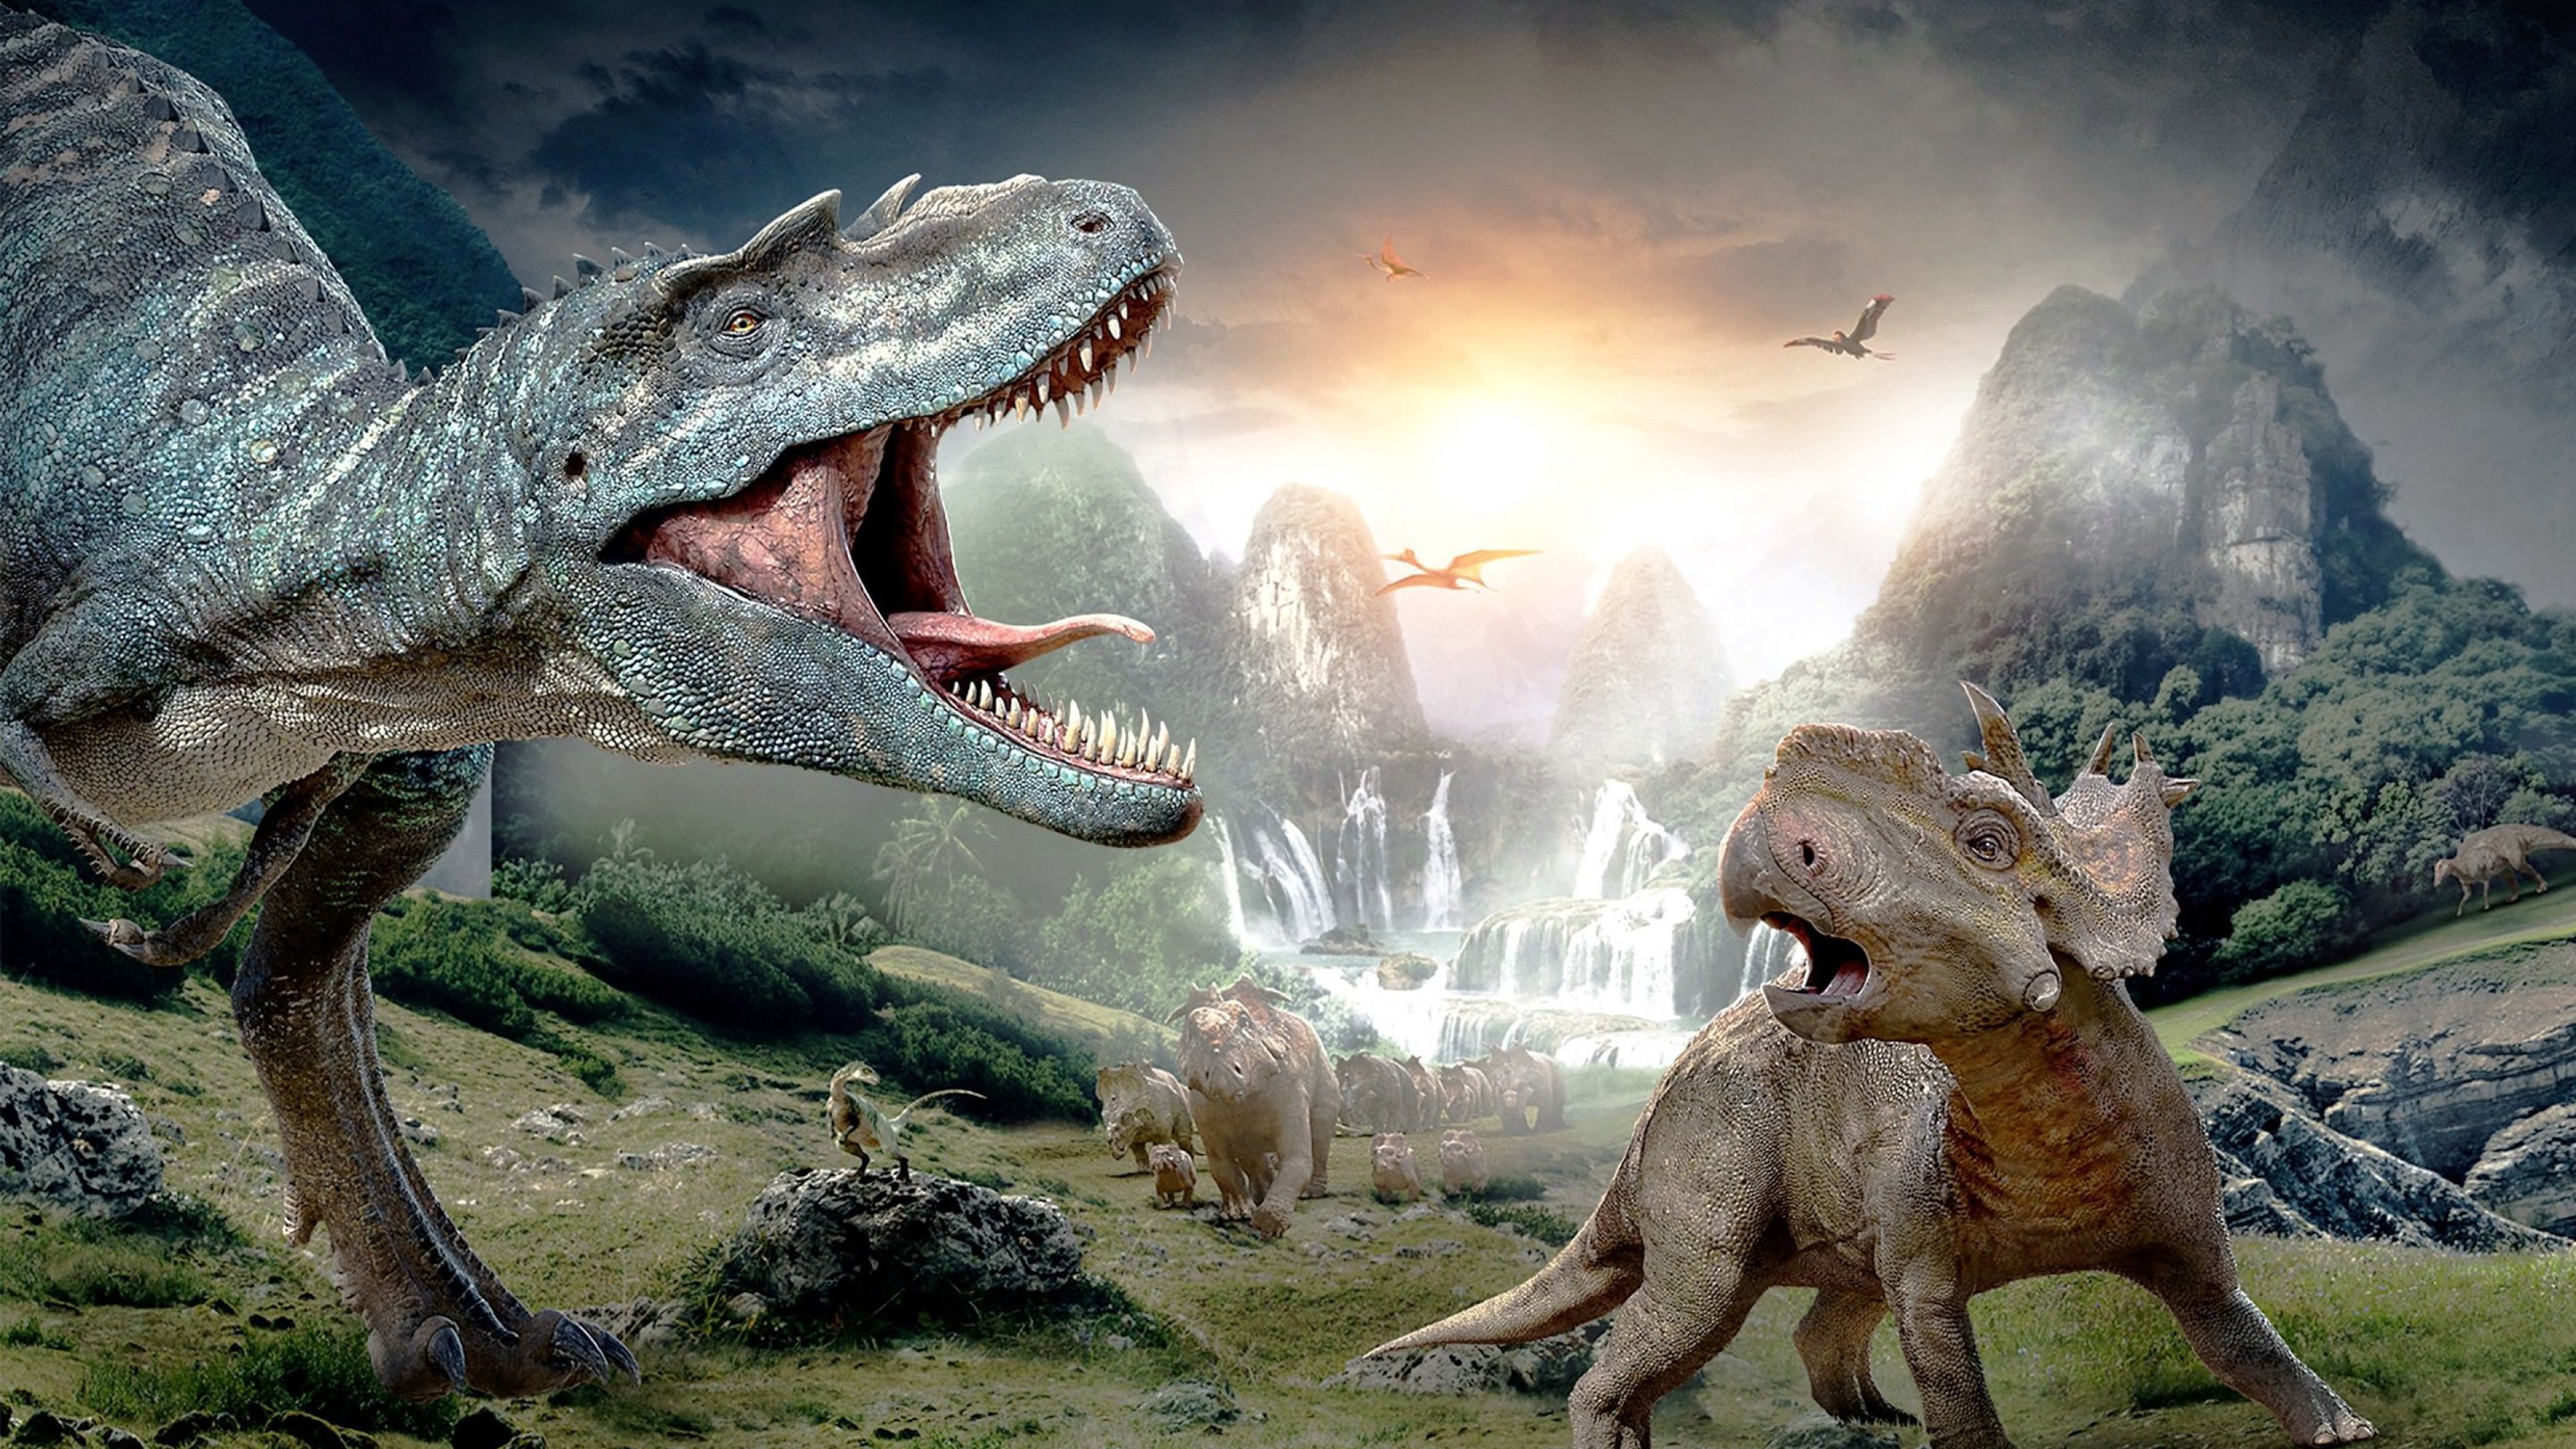 Dinosaur 4K Wallpapers - Los mejores fondos de Dinosaur 4K gratis